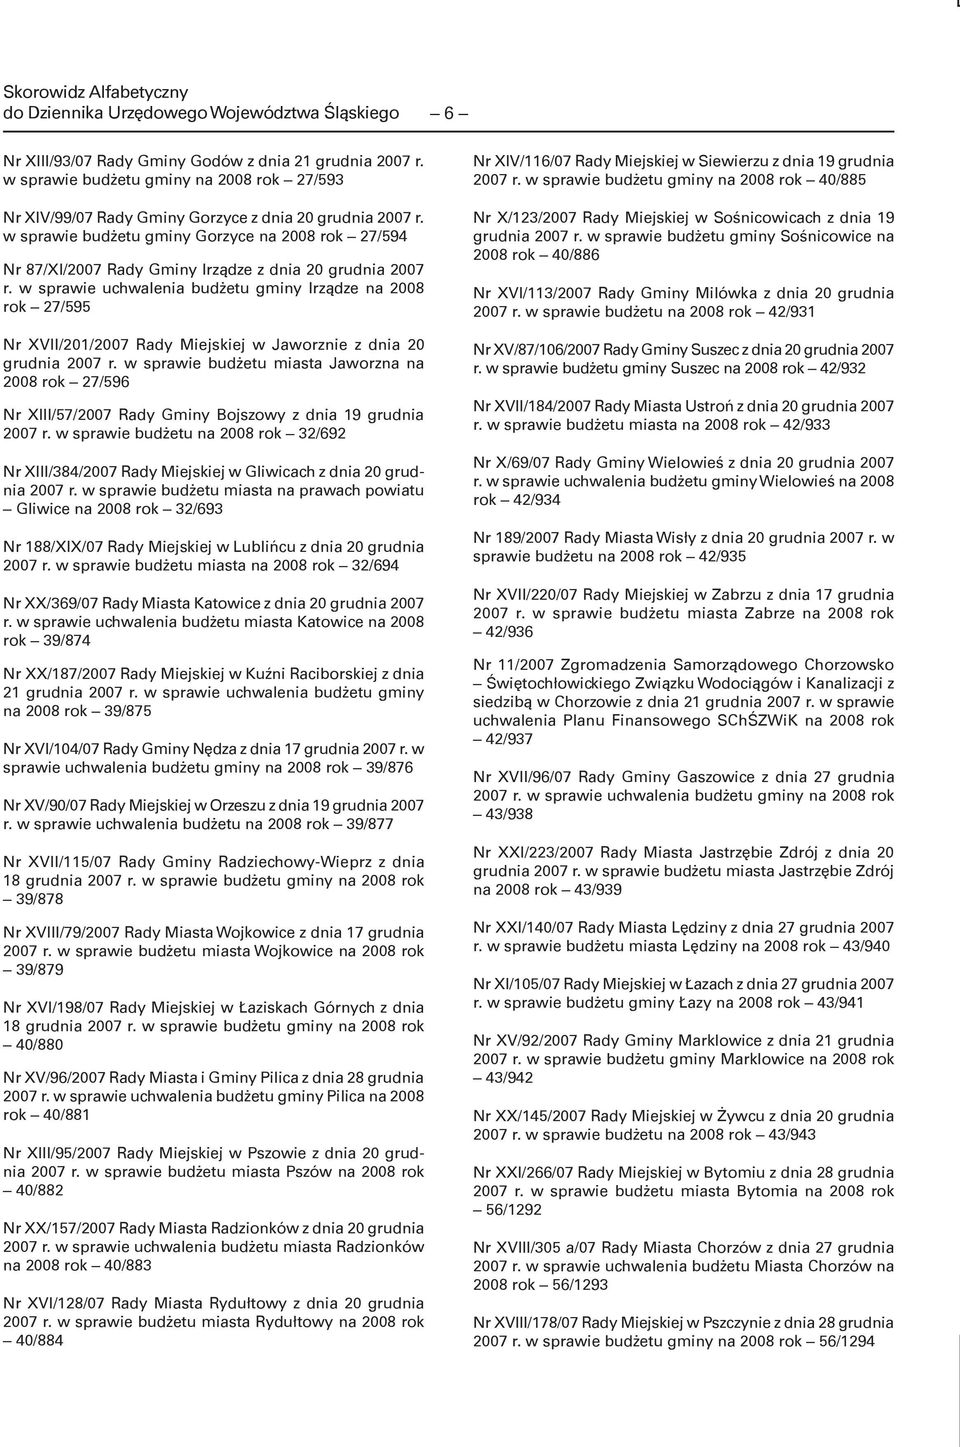 w sprawie budżetu gminy Gorzyce na 2008 rok 27/594 Nr 87/XI/2007 Rady Gminy Irządze z dnia 20 grudnia 2007 r.